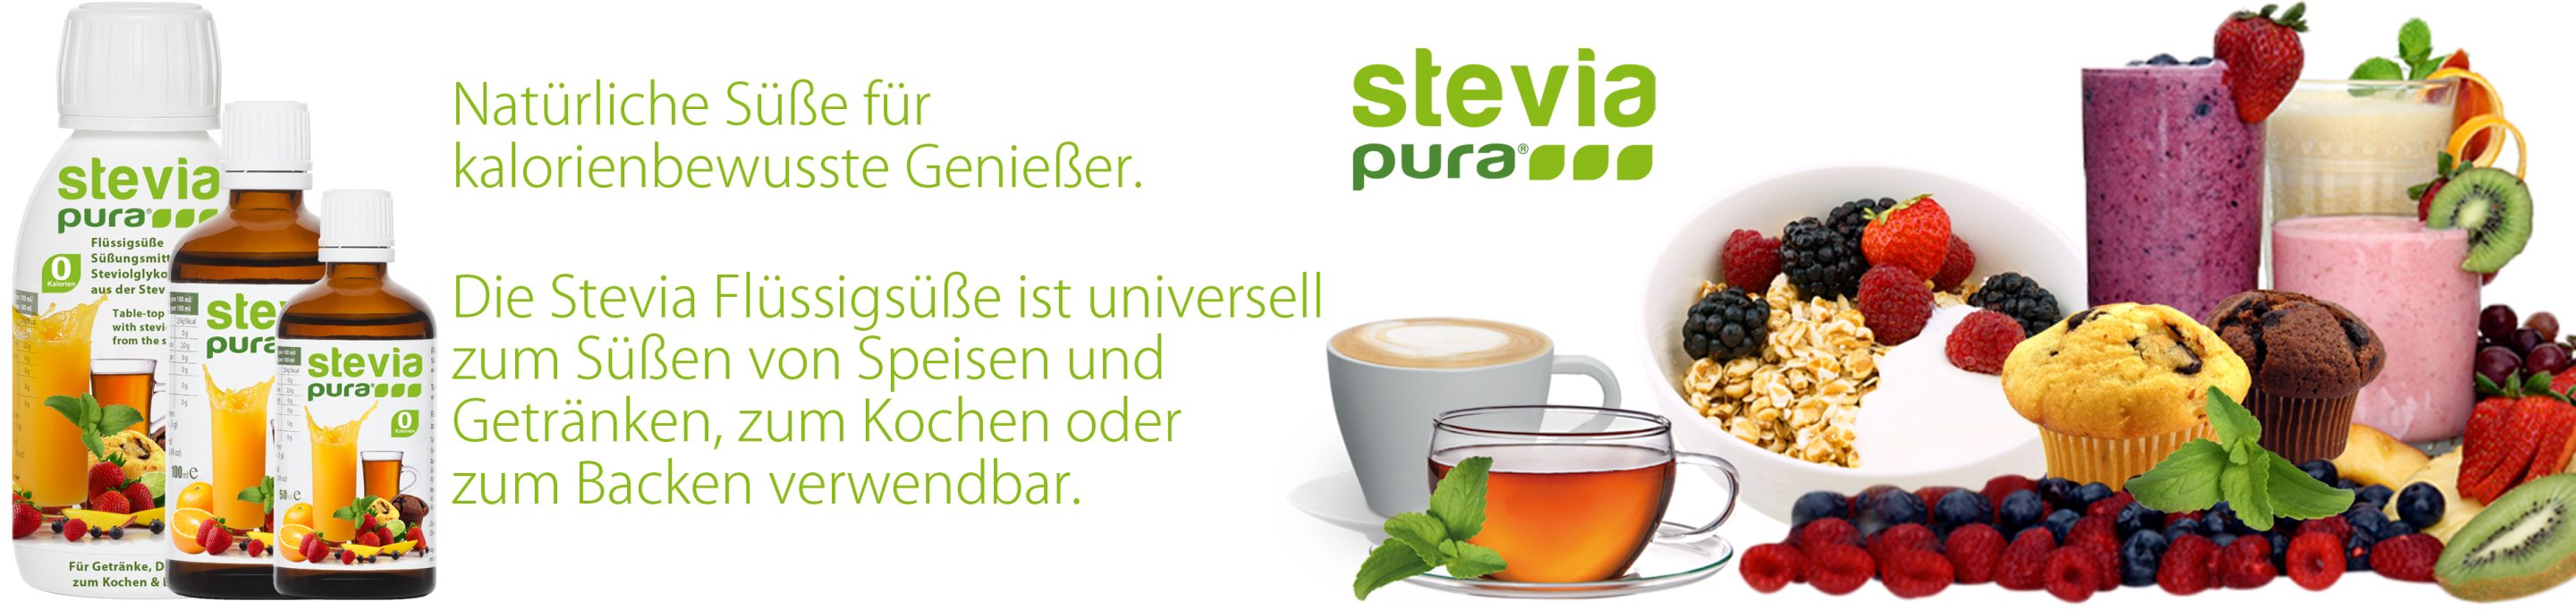 Stevia flüssig Stevia Flüssigsüße Süßungsmittel Stecia...